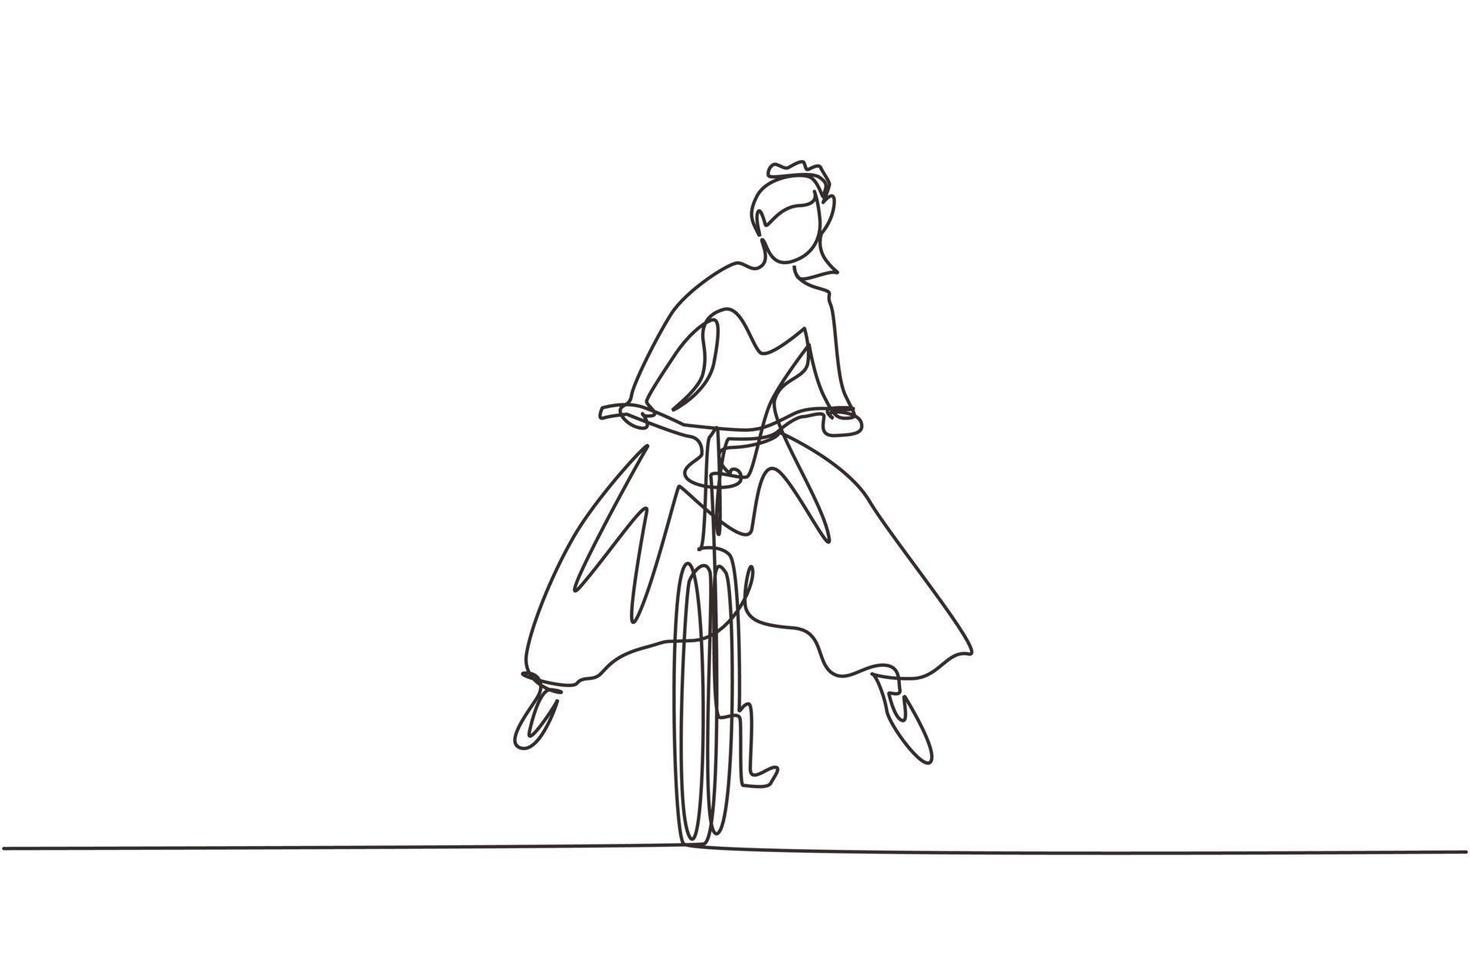 dibujo de una sola línea continua mujer joven feliz con vestido de novia yendo a la celebración de la boda montando en bicicleta. vehículo de transporte ecológico y saludable. vector de diseño gráfico de dibujo de una línea